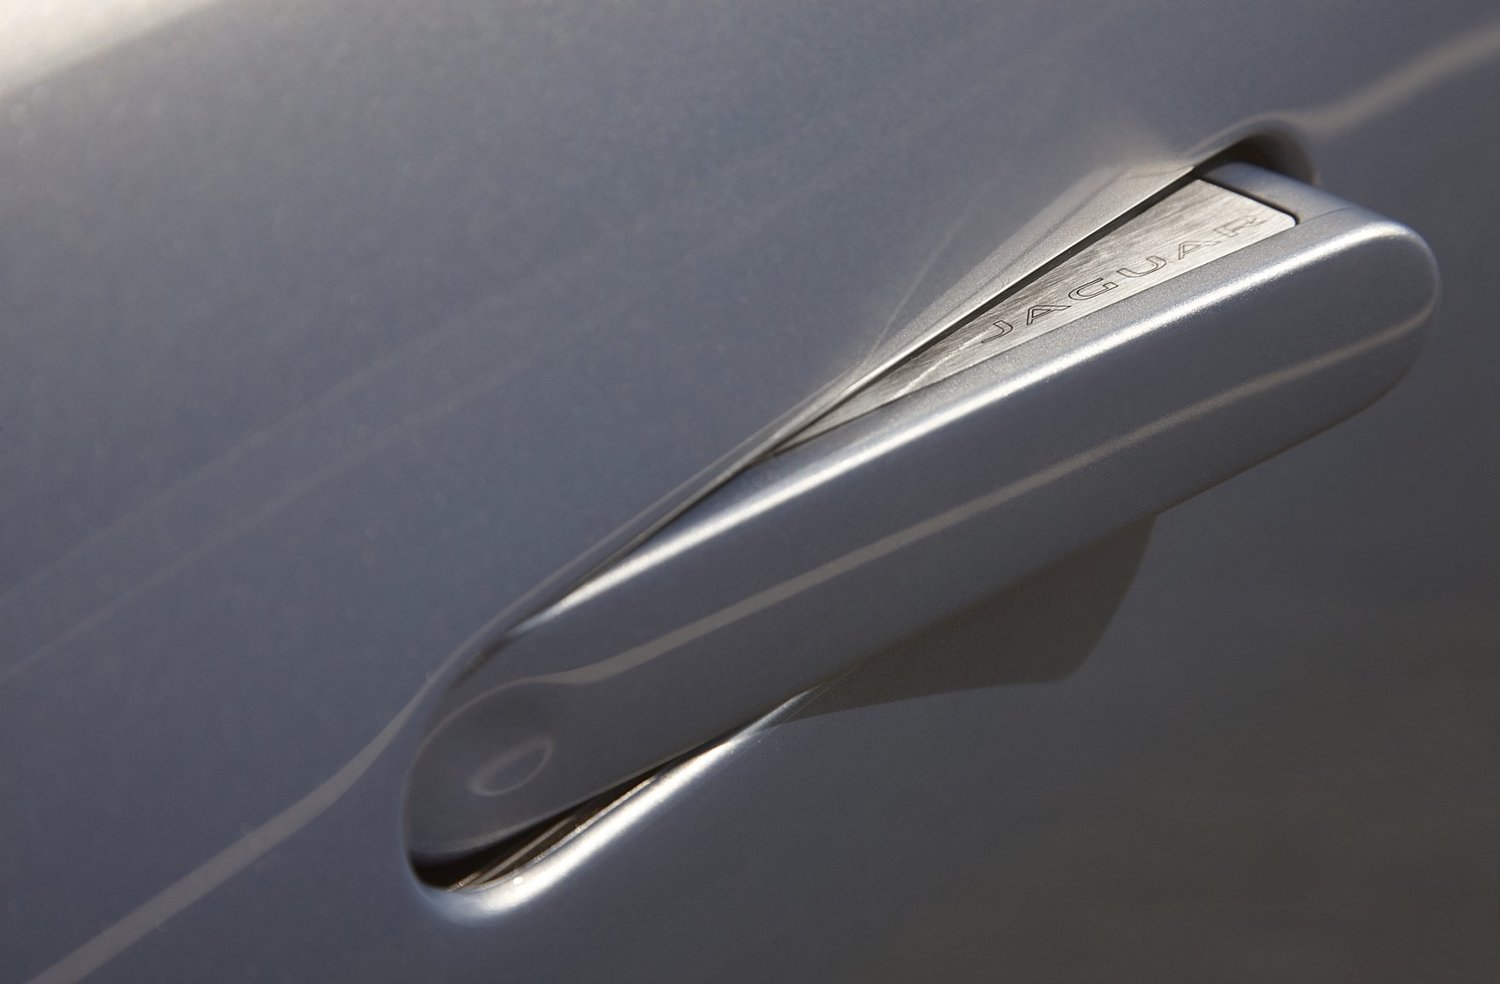 кабриолет Jaguar F-Type 2013 - 2016г выпуска модификация 3.0 AT (380 л.с.)